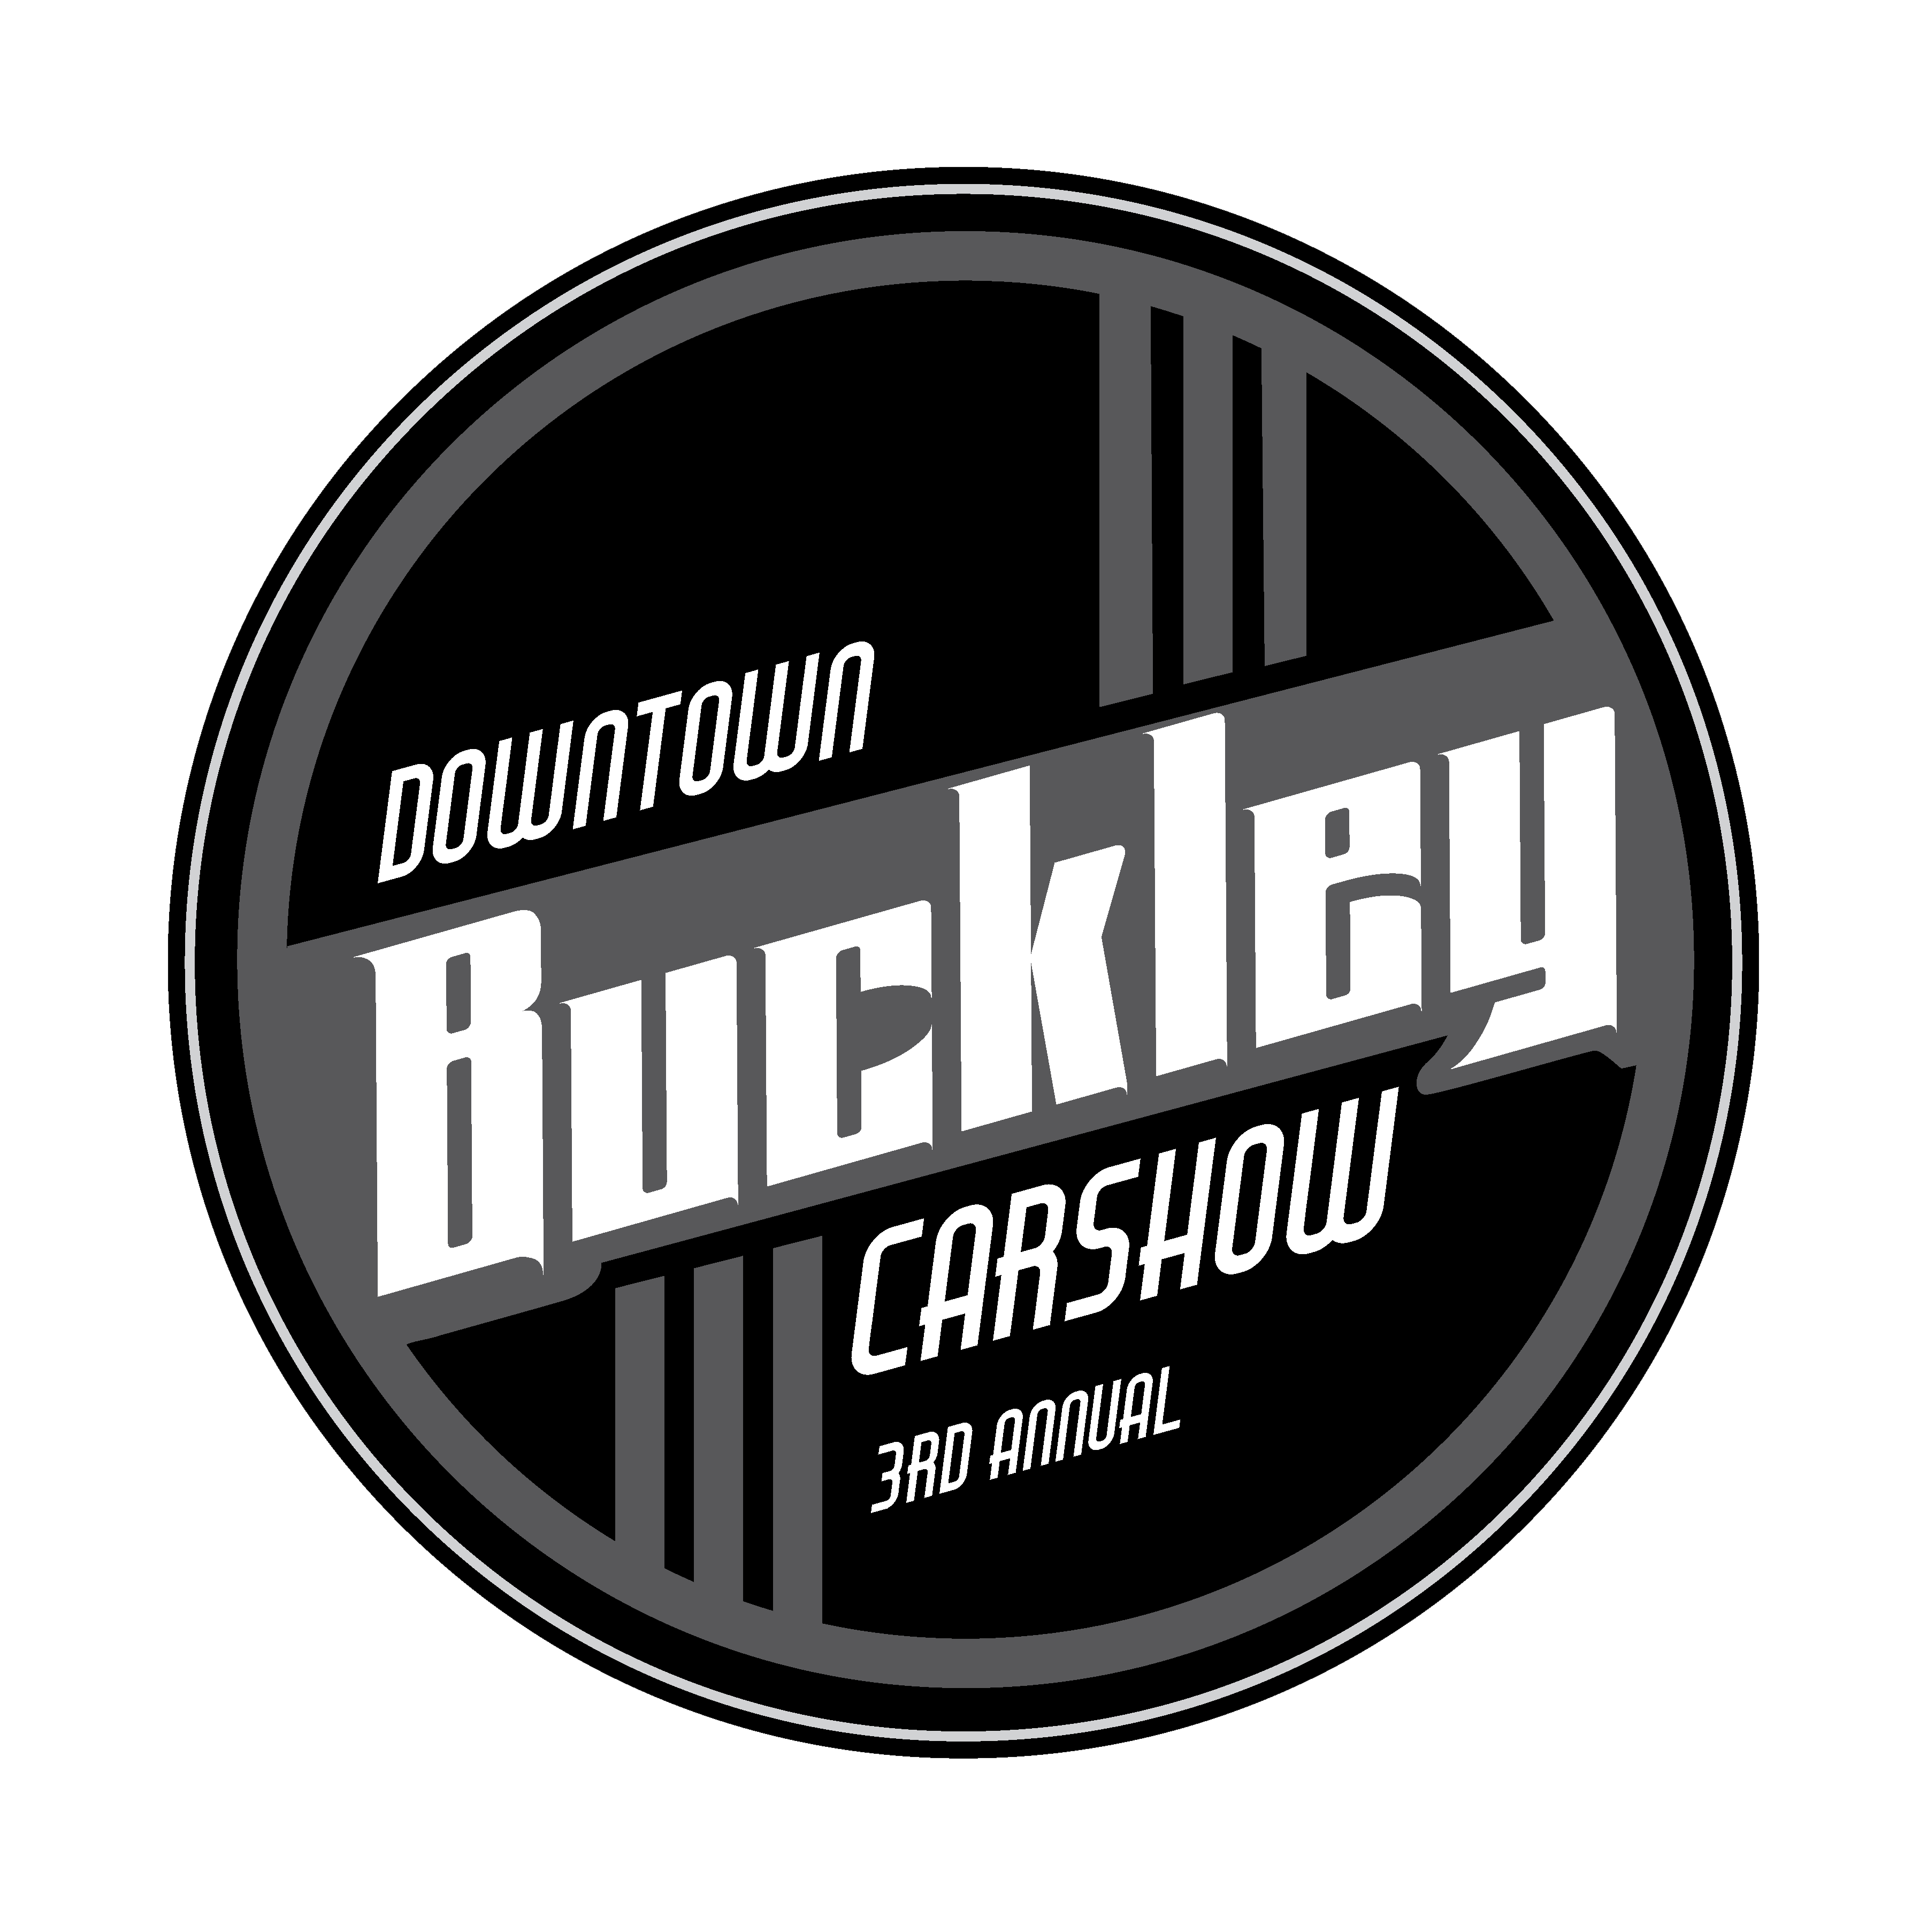 Buckley Car Show Logo